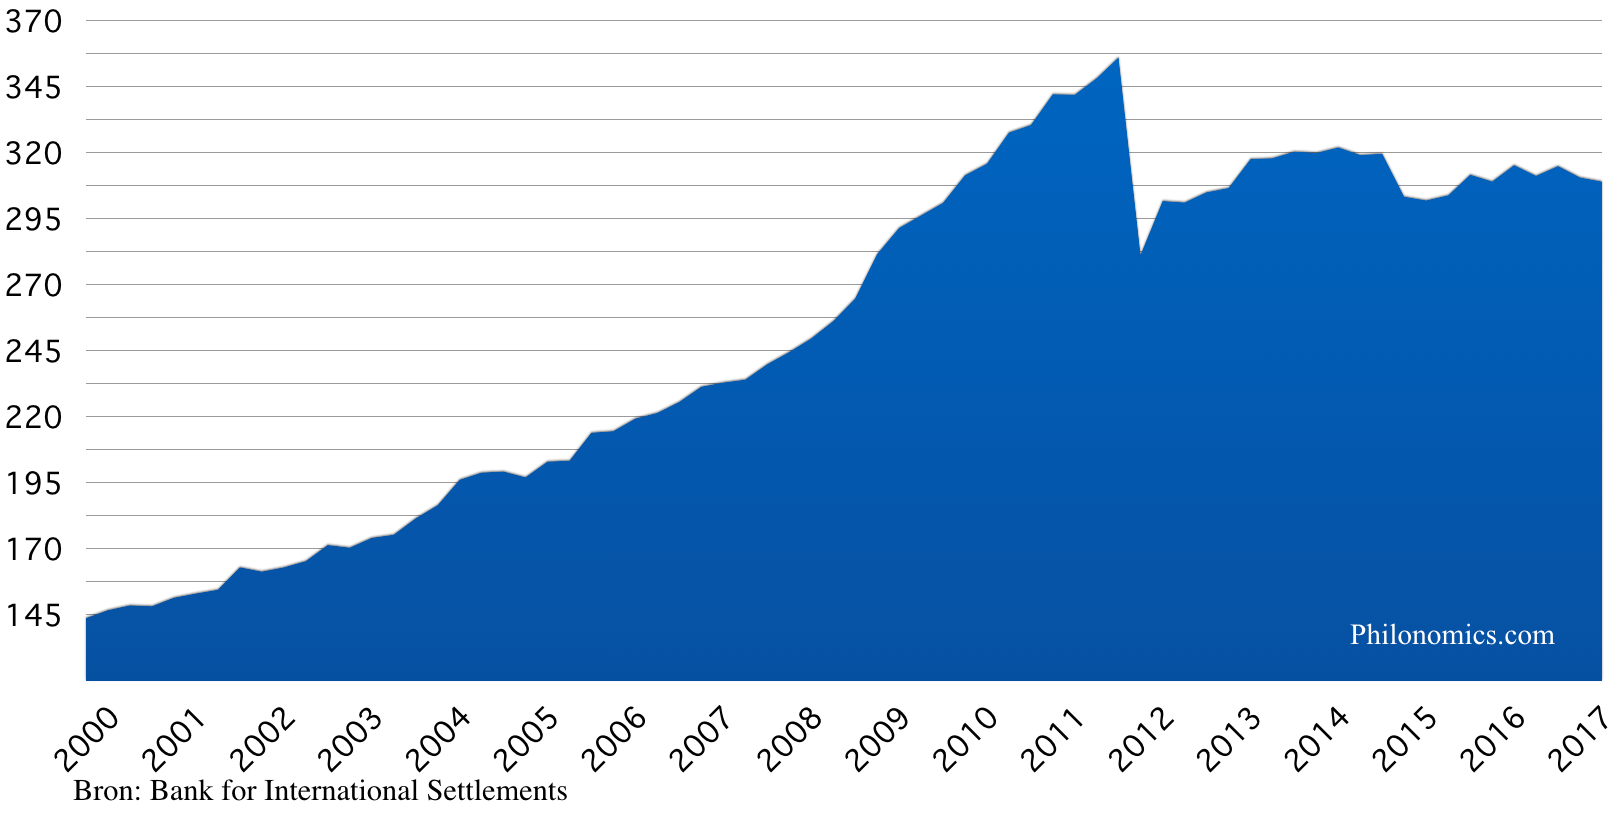 Staatsschuld Griekenland (in miljarden €) 2000-2017